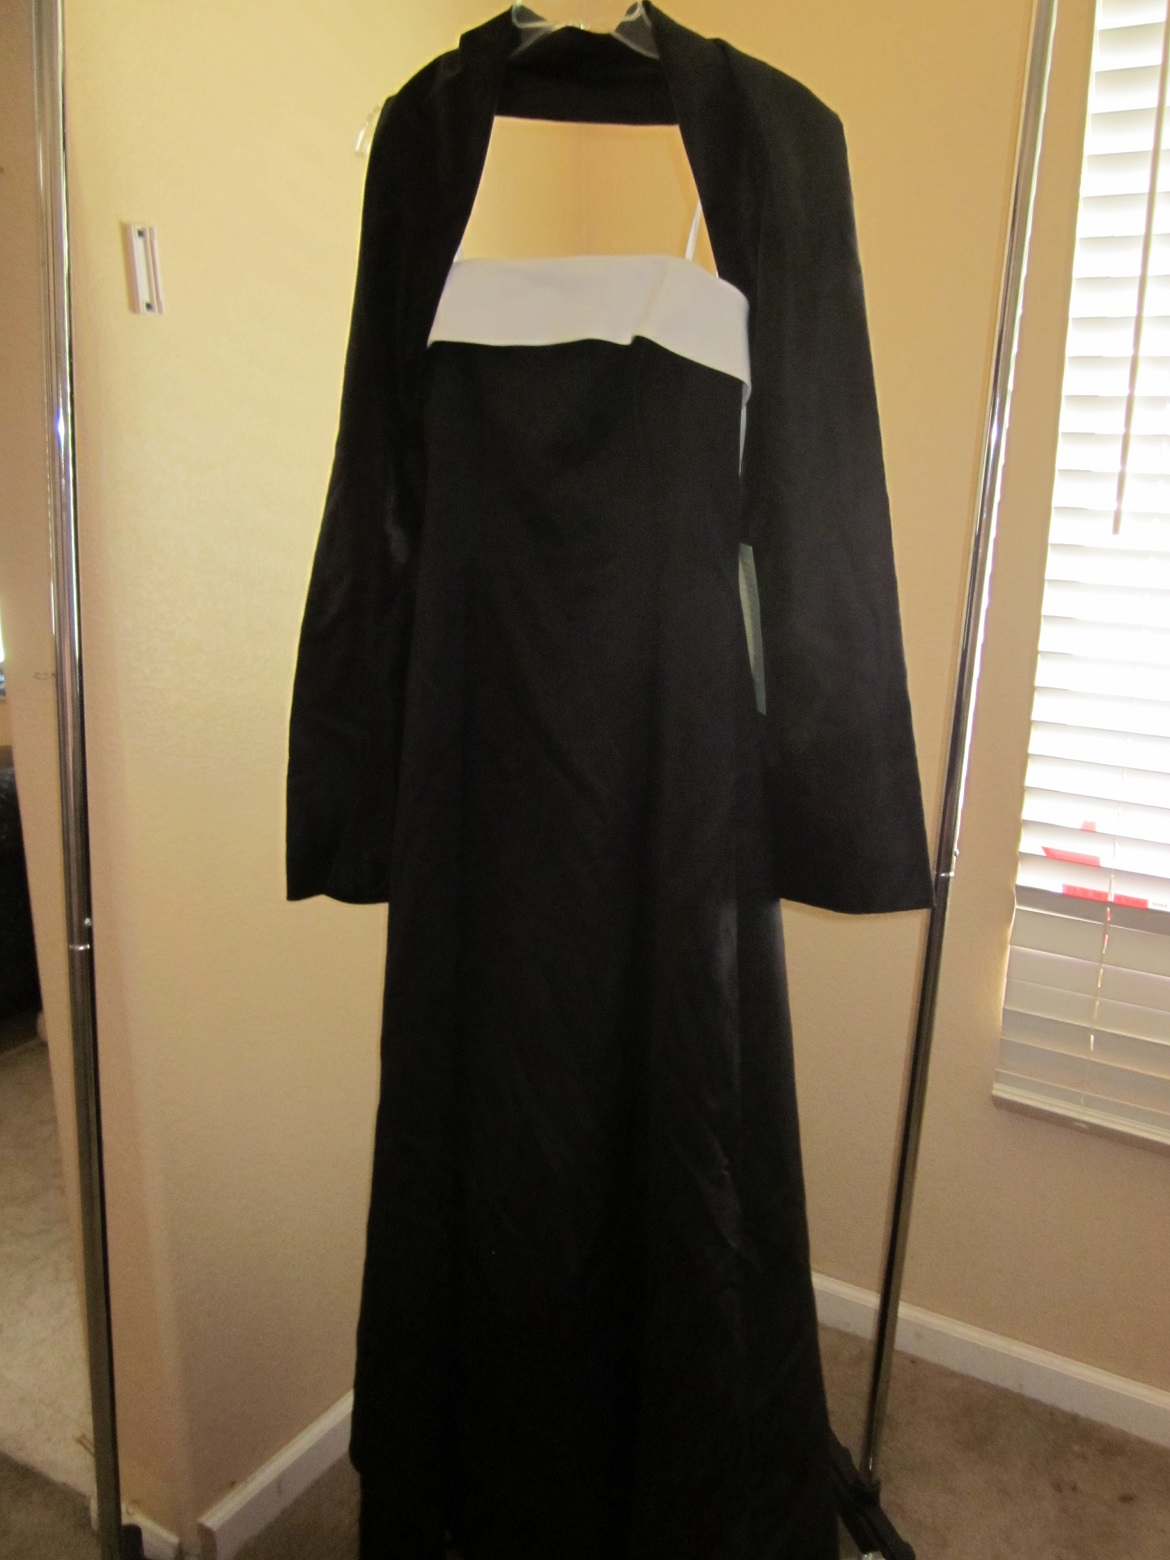 Formal Dress - Size 7/8 in MelsGarageSale Sale North Las Vegas, NV